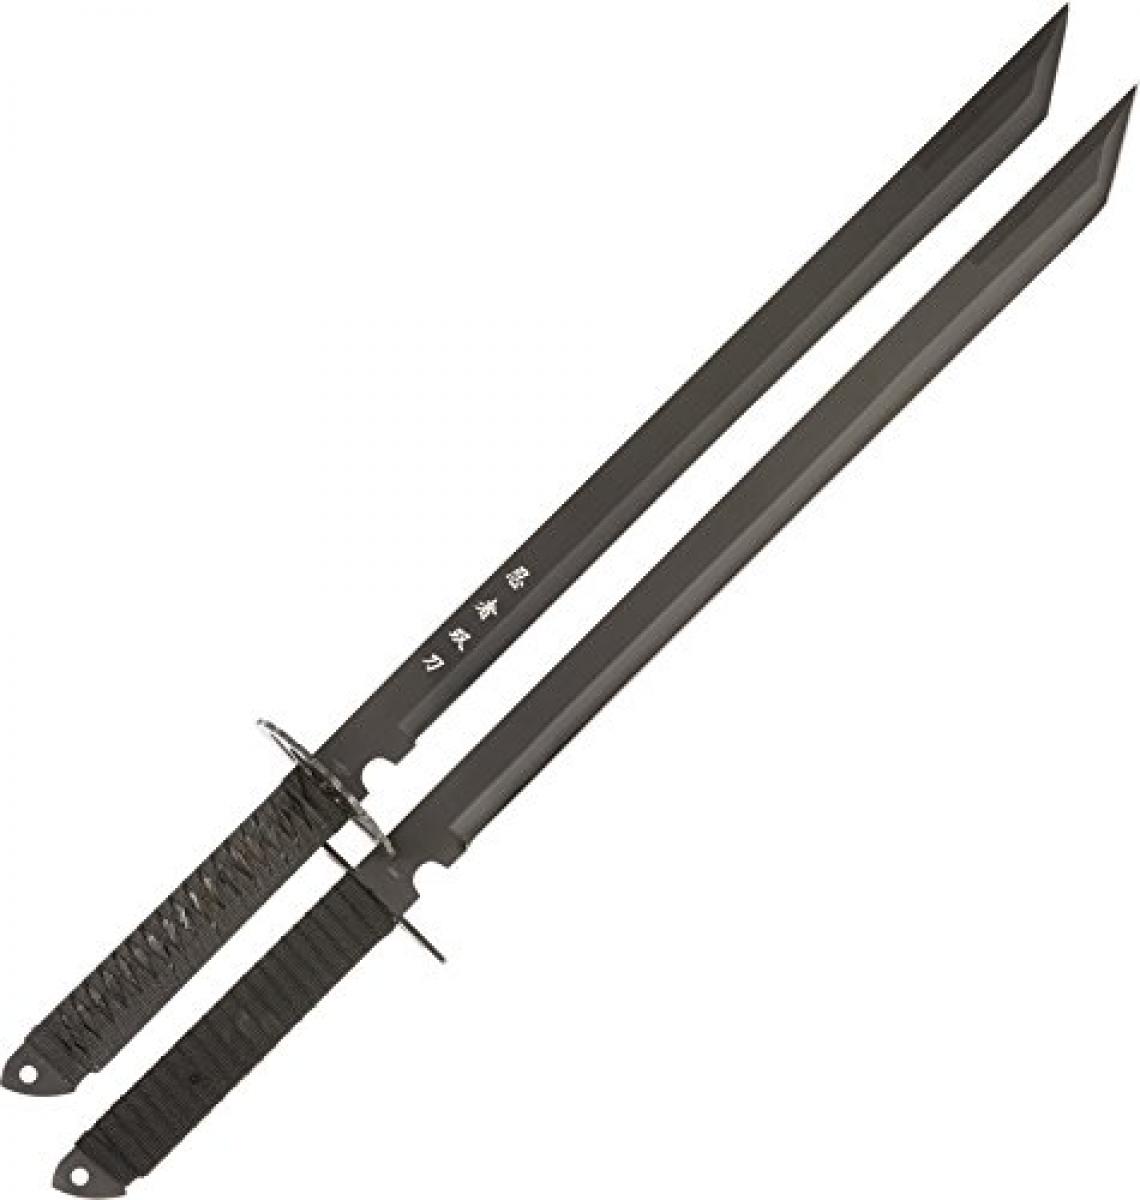 Twin Ninja Swords